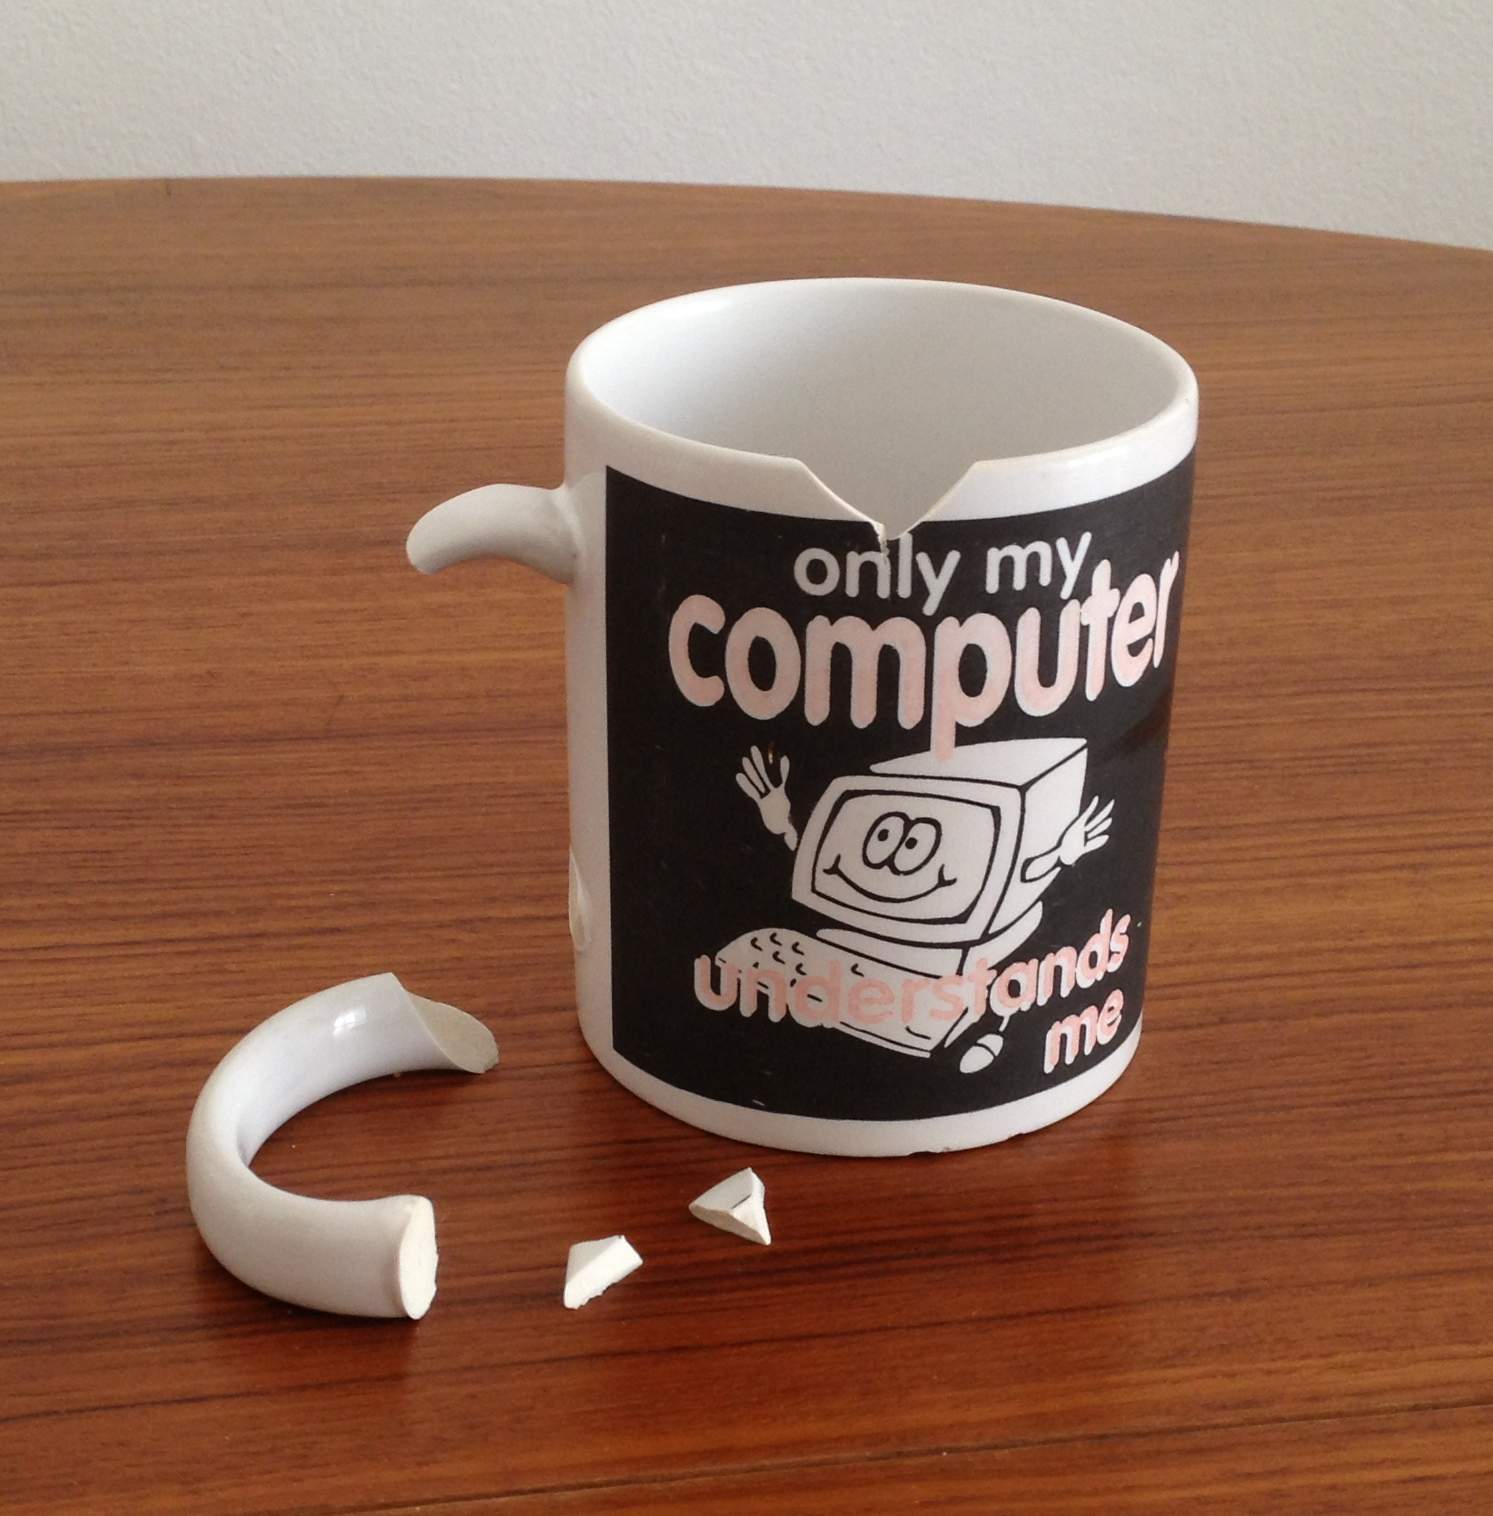 I broke my favourite mug